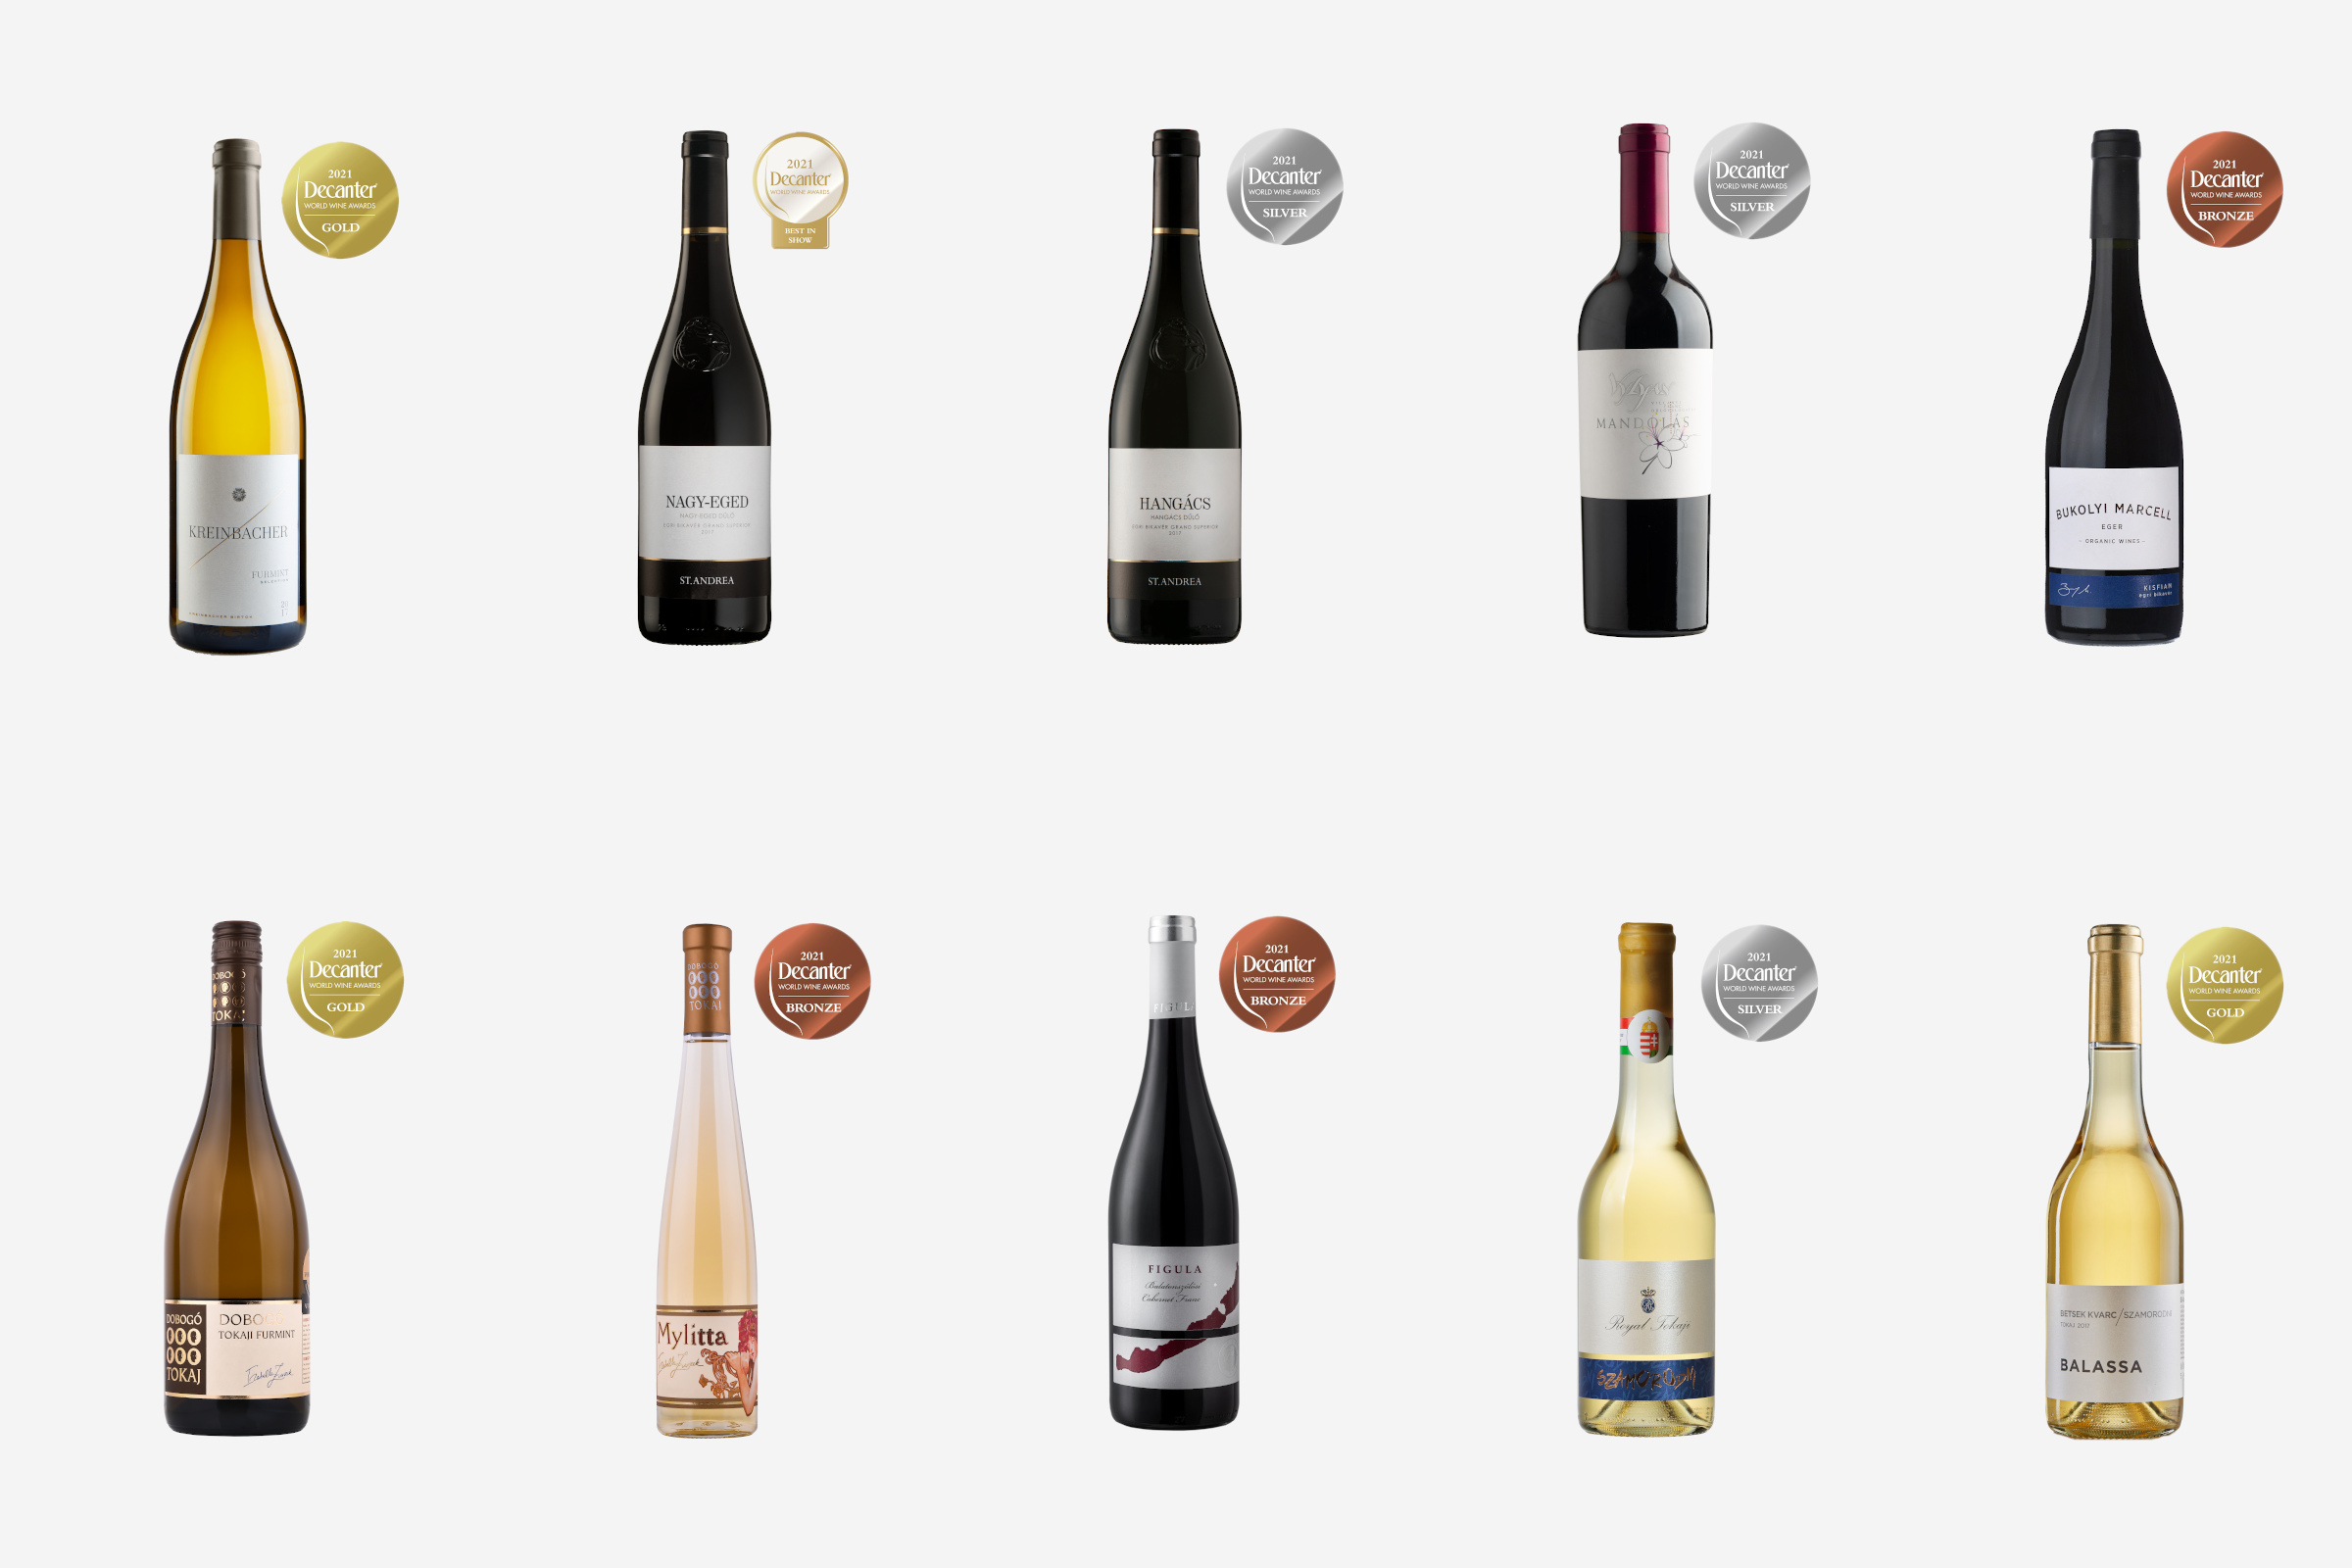 Ungarische Weine aus der Vinotek.hu-Auswahl, die auf der DWWA 2021 prämiert wurden.